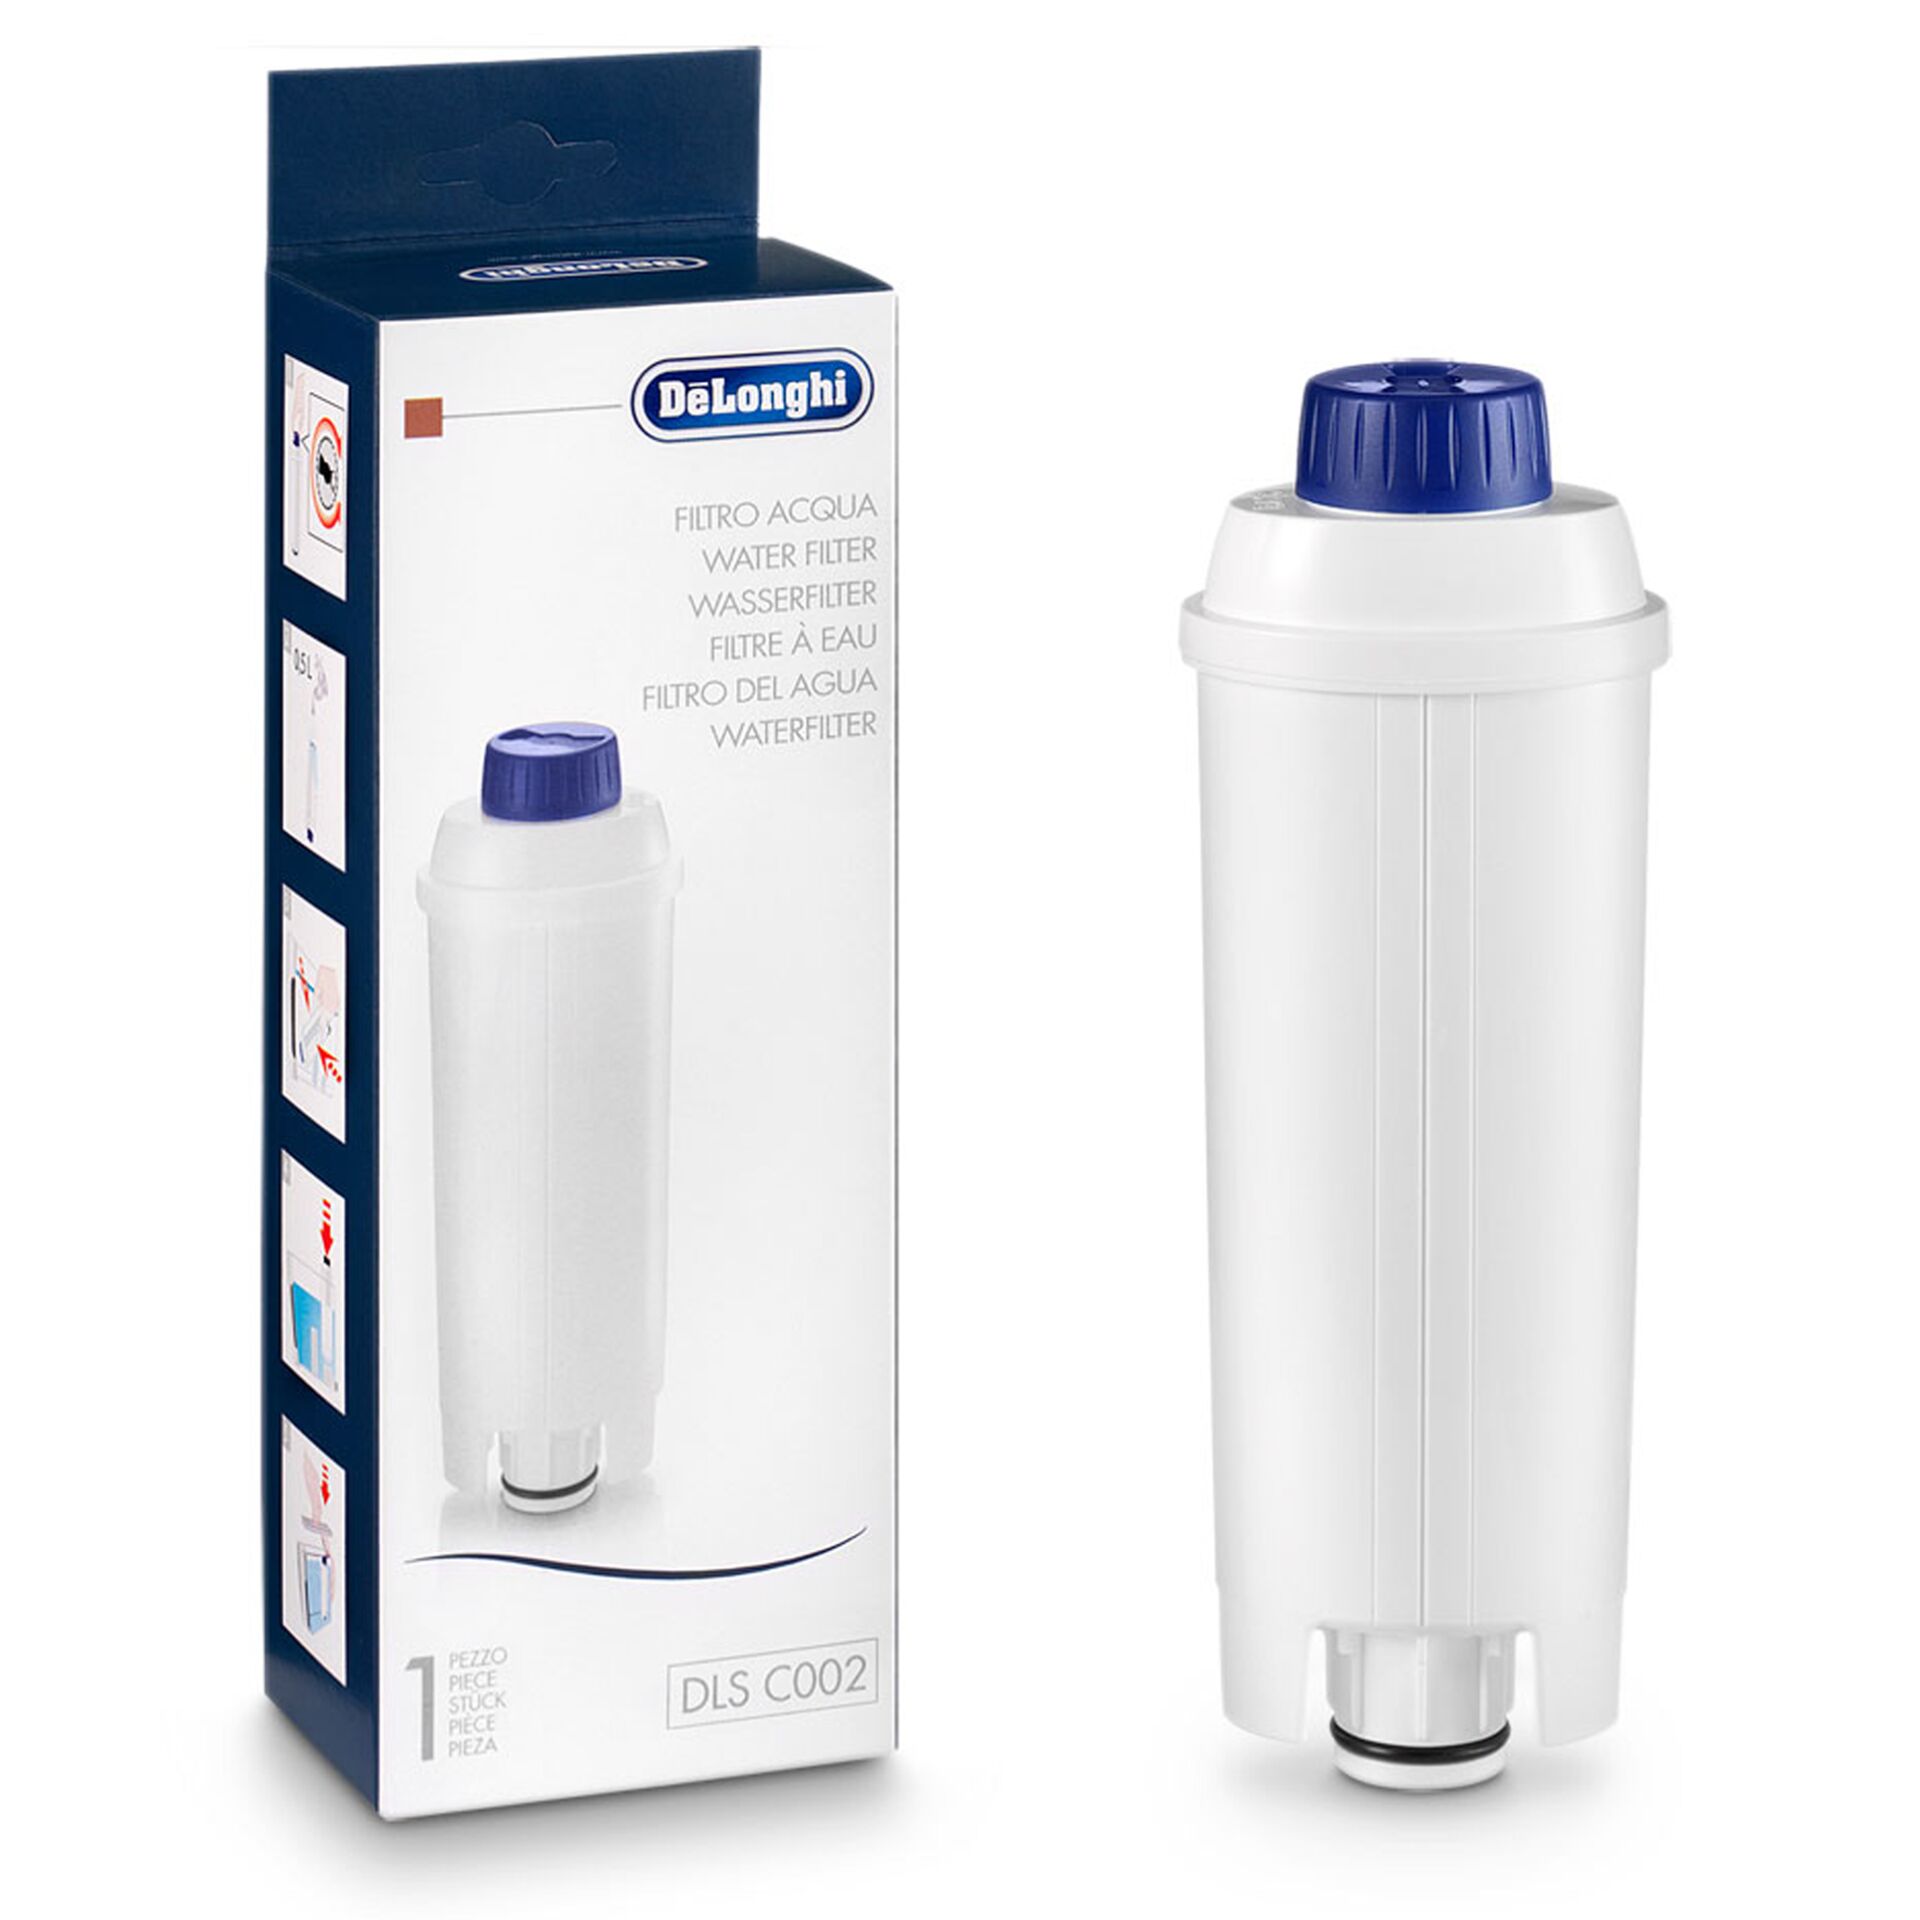 DeLonghi DLS C002 Wasserfilter für Espressomaschinen 